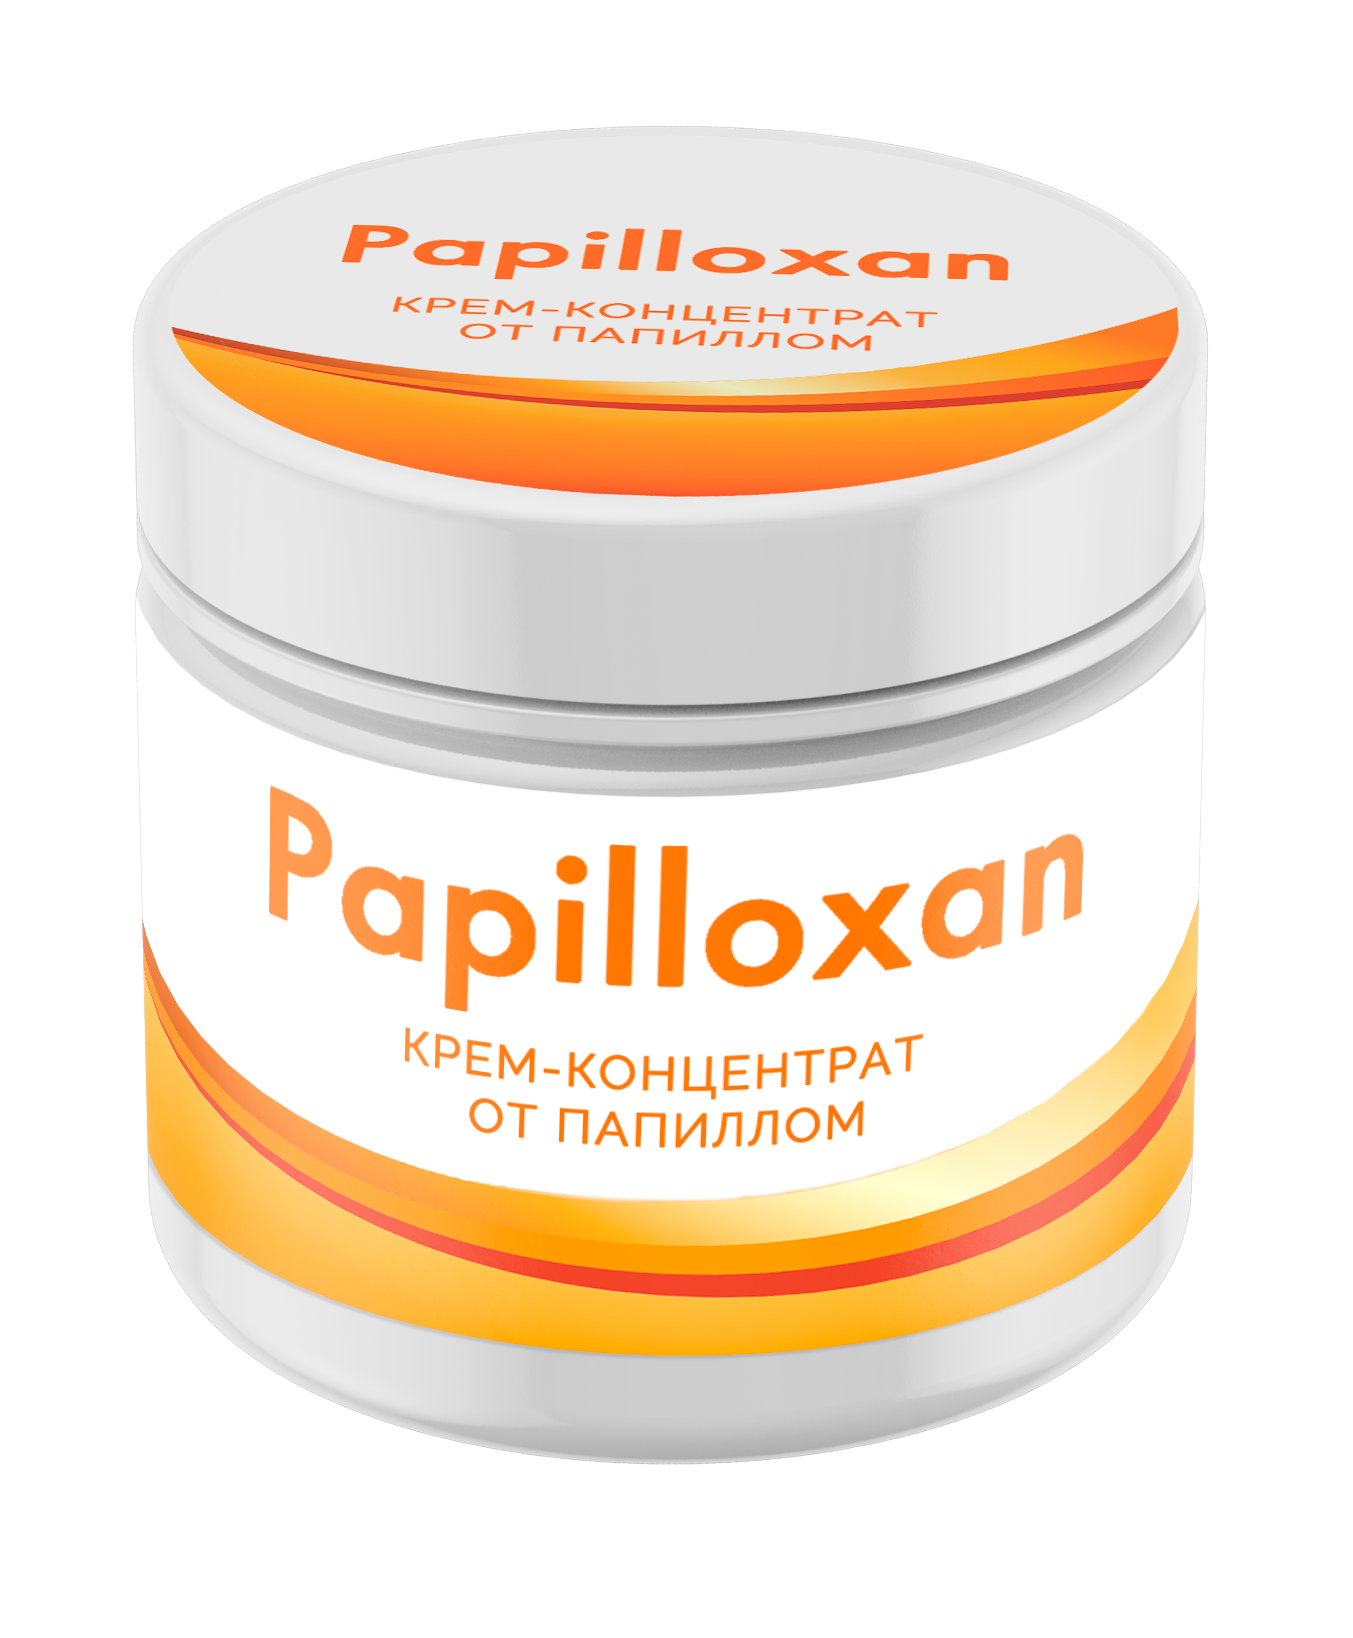 Papilloxan - цена и где купить в аптеке?